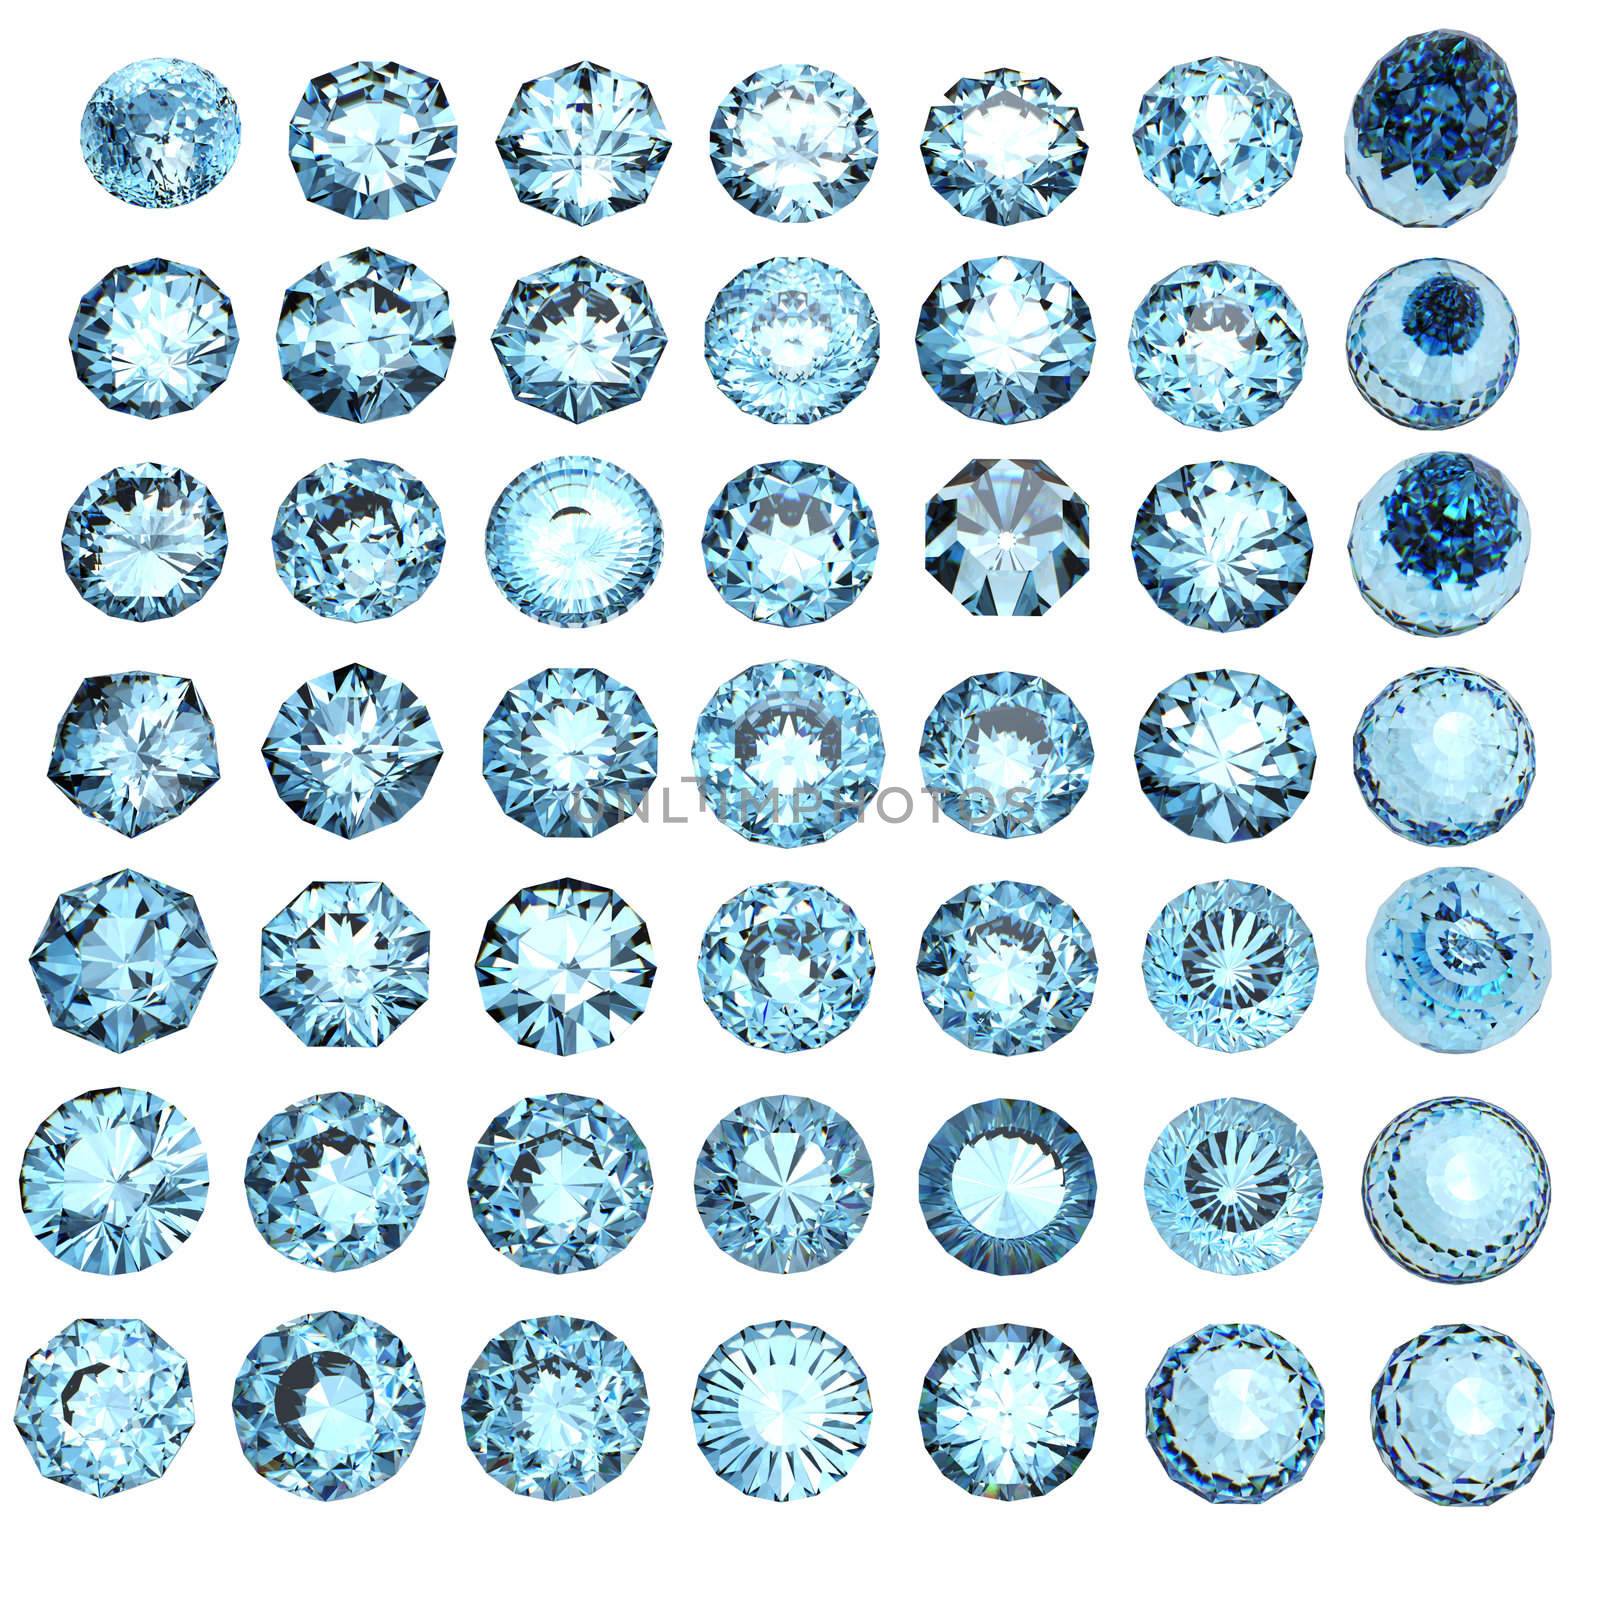 Set of round swiss blue topaz isolated on white background. Gemstone